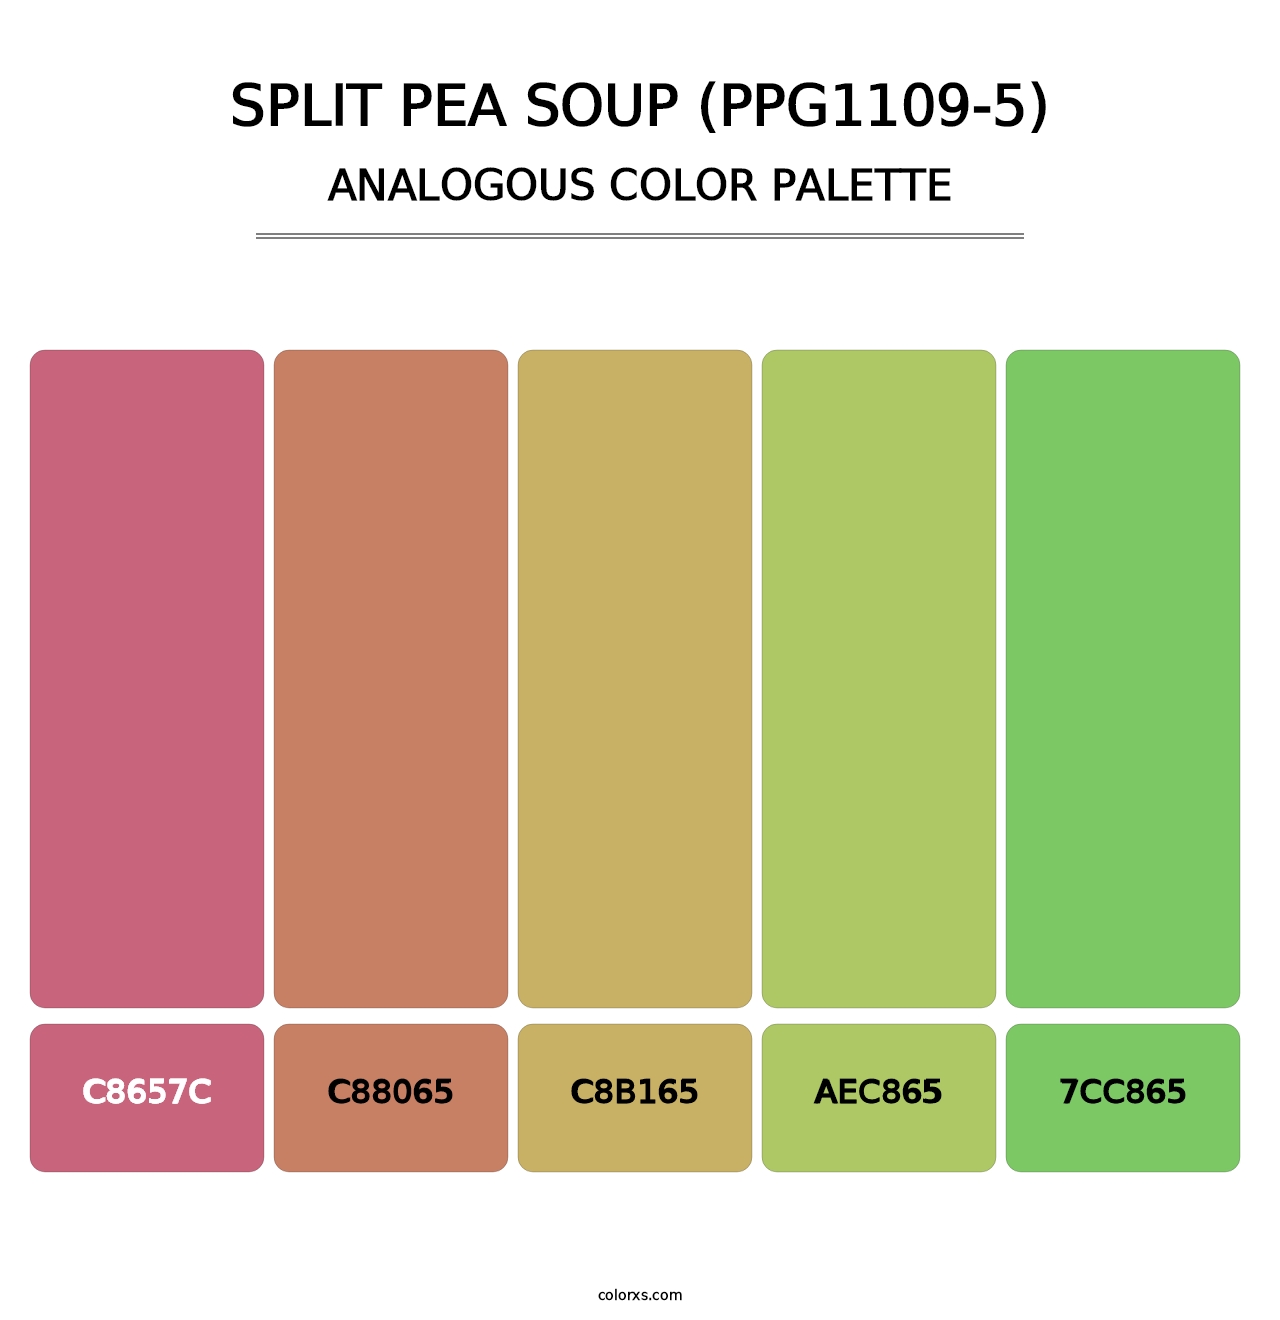 Split Pea Soup (PPG1109-5) - Analogous Color Palette